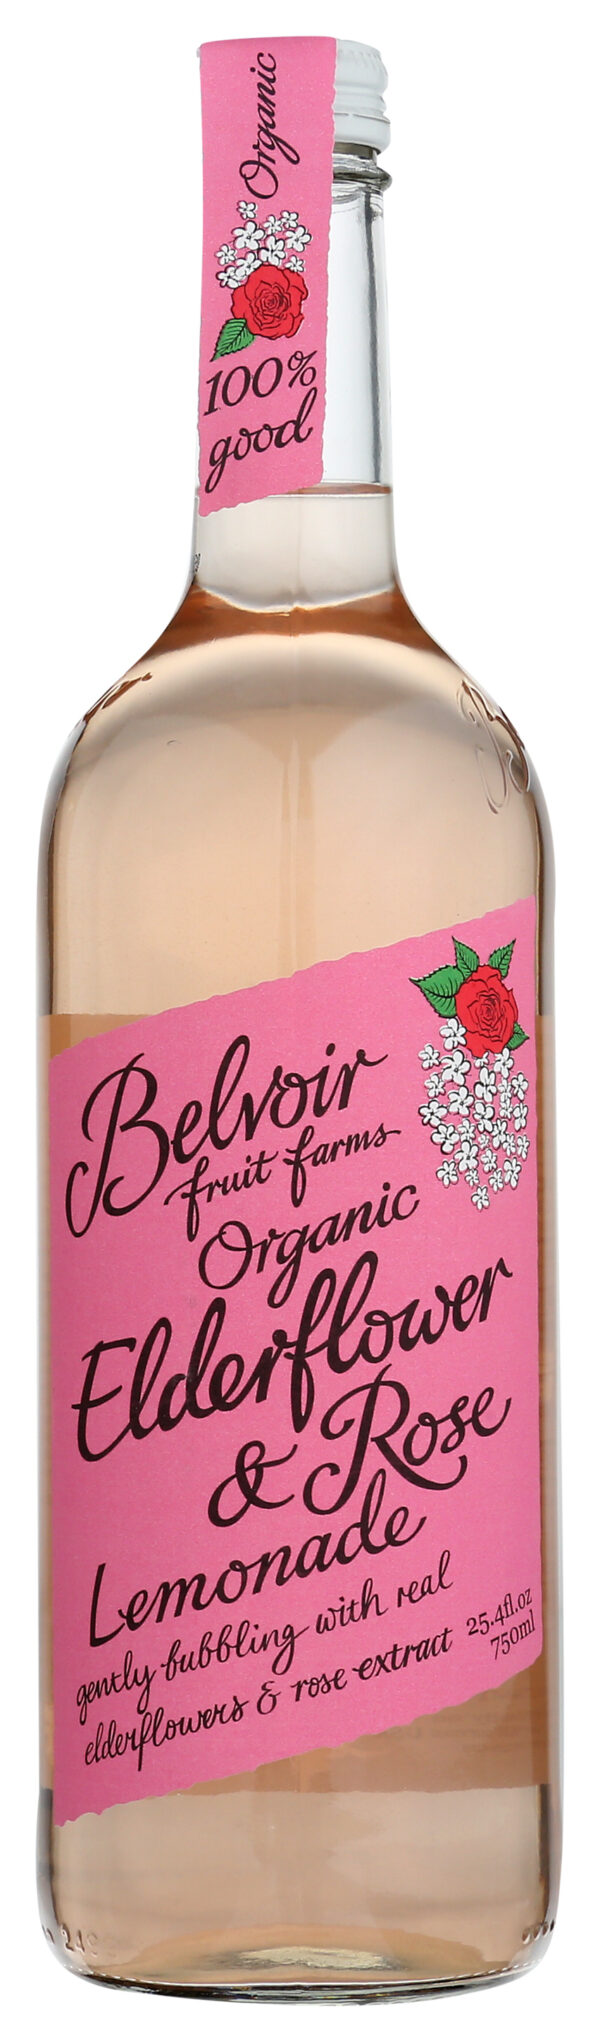 Organic Elderflower & Rose Lemonade 25.4 OZ